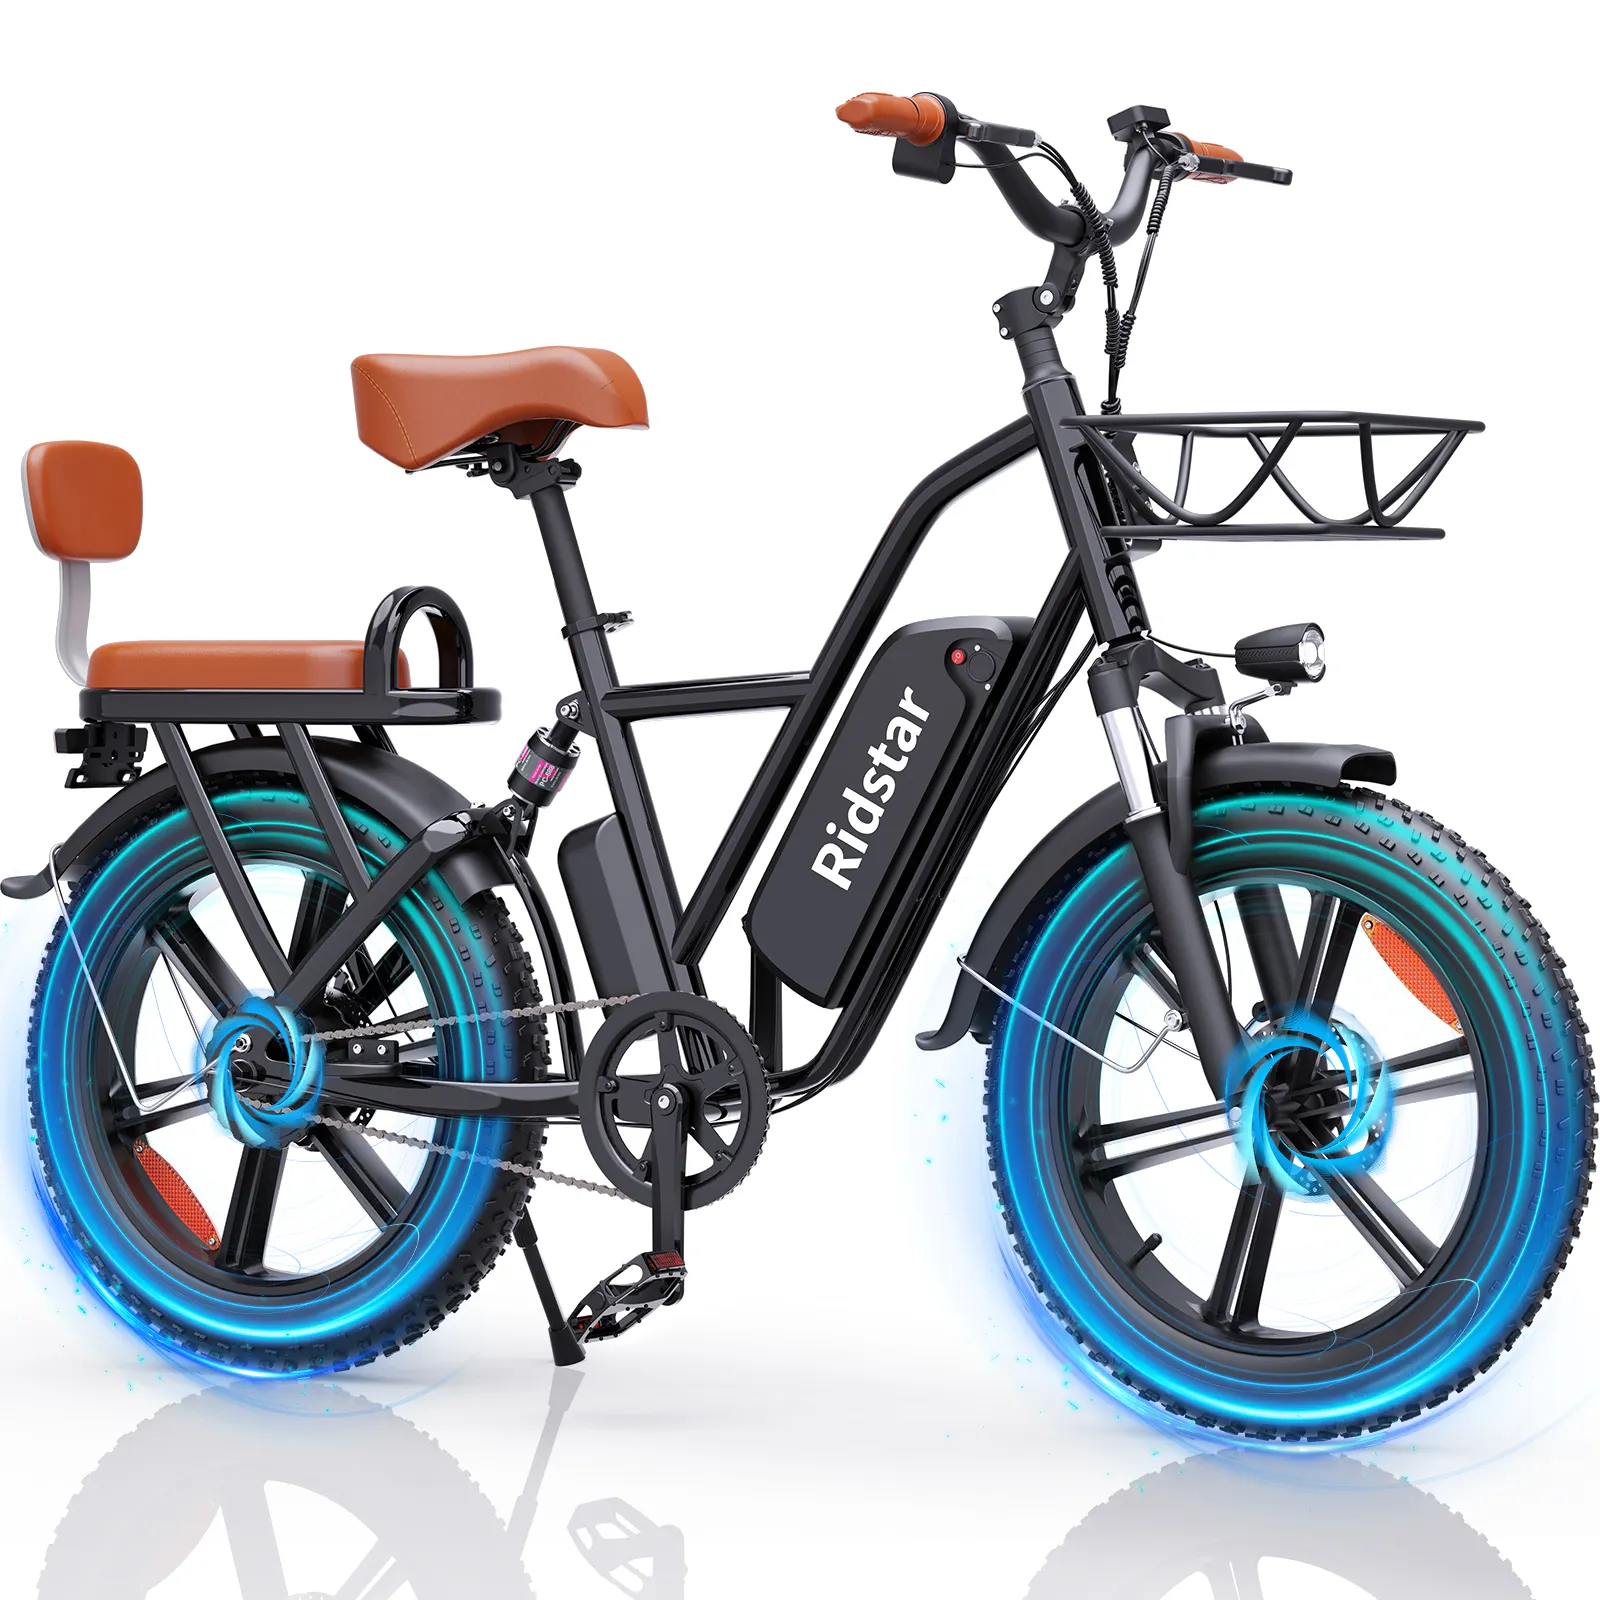 دراجة عائلية Ridstar بقدرة 500 وات Fm-001 دراجة كهربائية ببطارية قابلة للشحن بمقعدين للشحن مجانًا من الولايات المتحدة الأمريكية